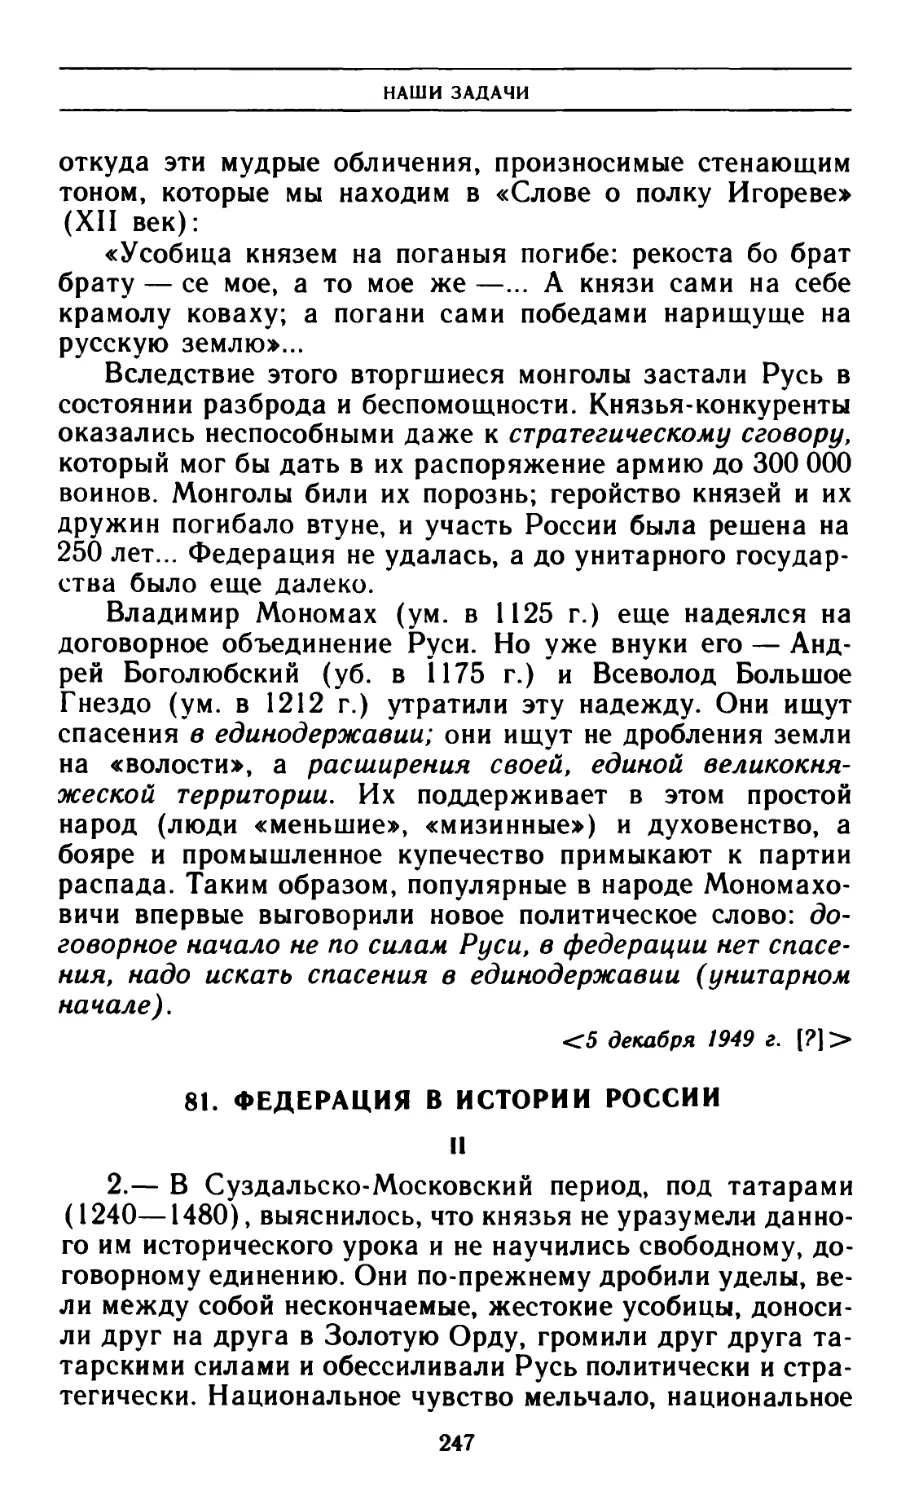 81. Федерация в истории России II